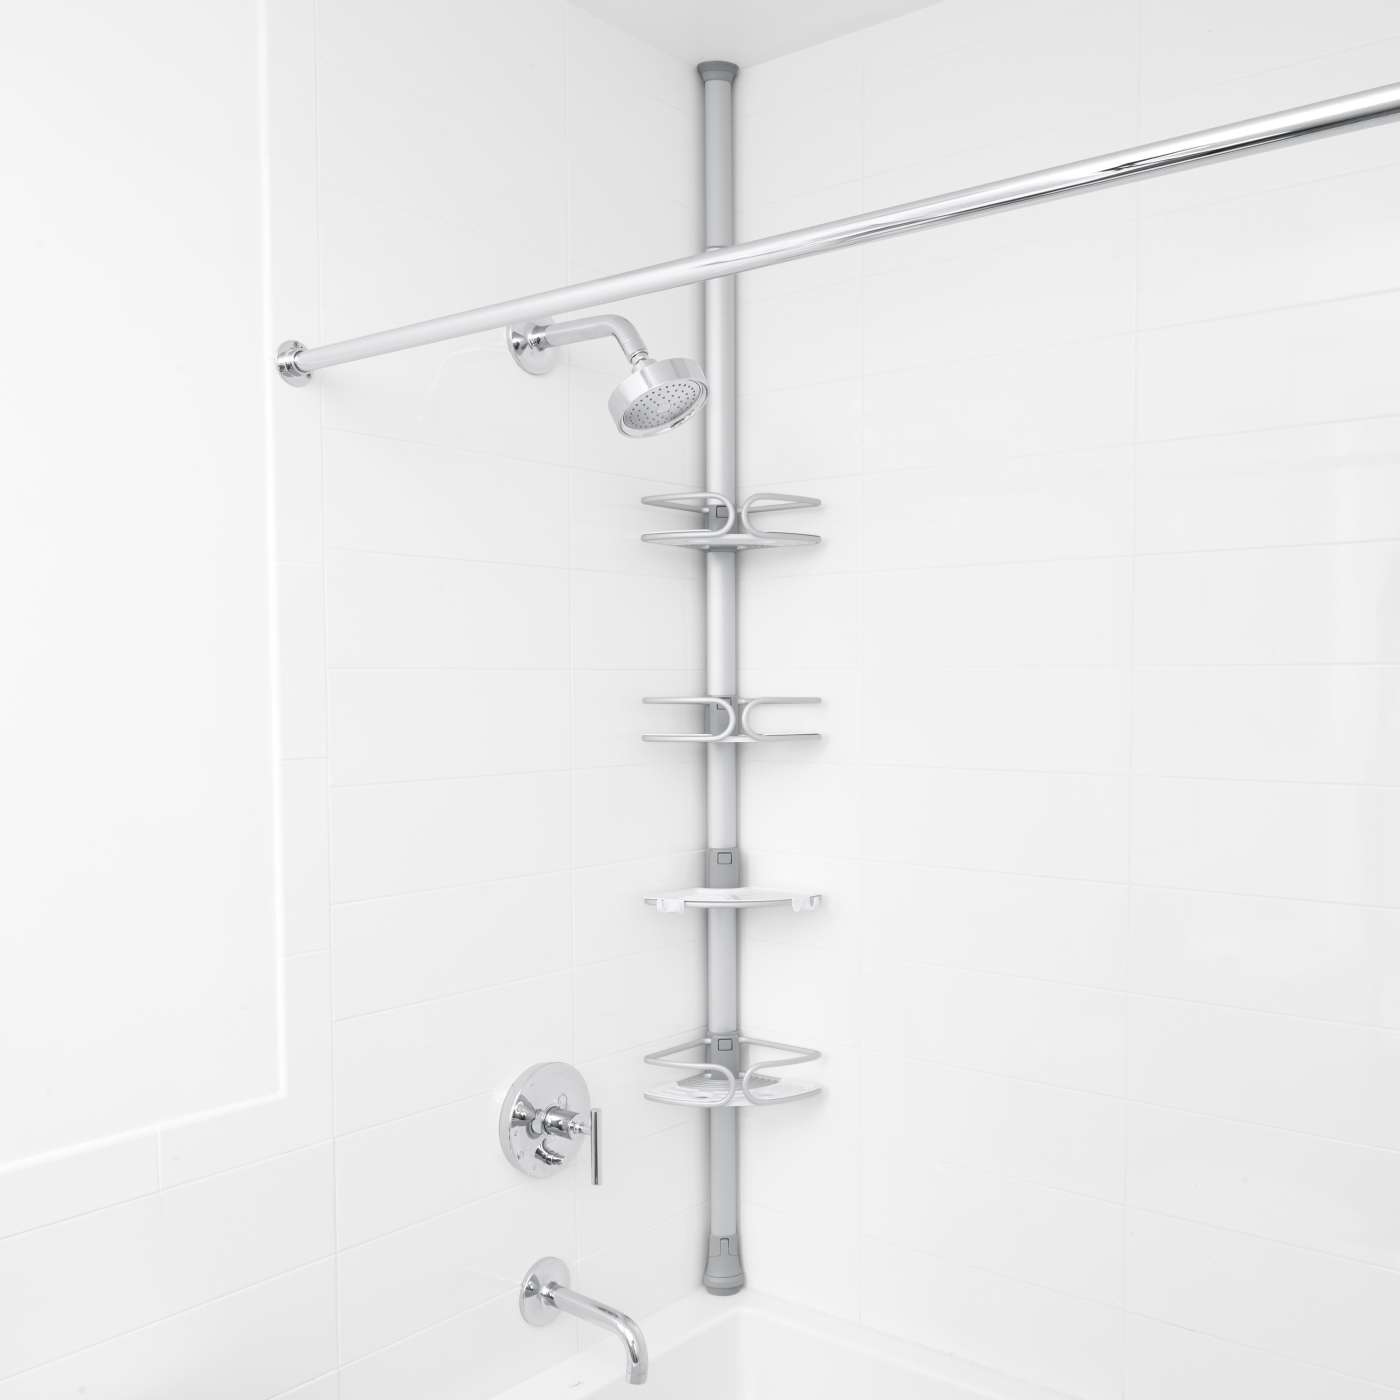 OXO Good Grips Quick-Extend Aluminum Pole Shower 4-Shelf Bath Caddy -  Silver, 1 ct - Gerbes Super Markets